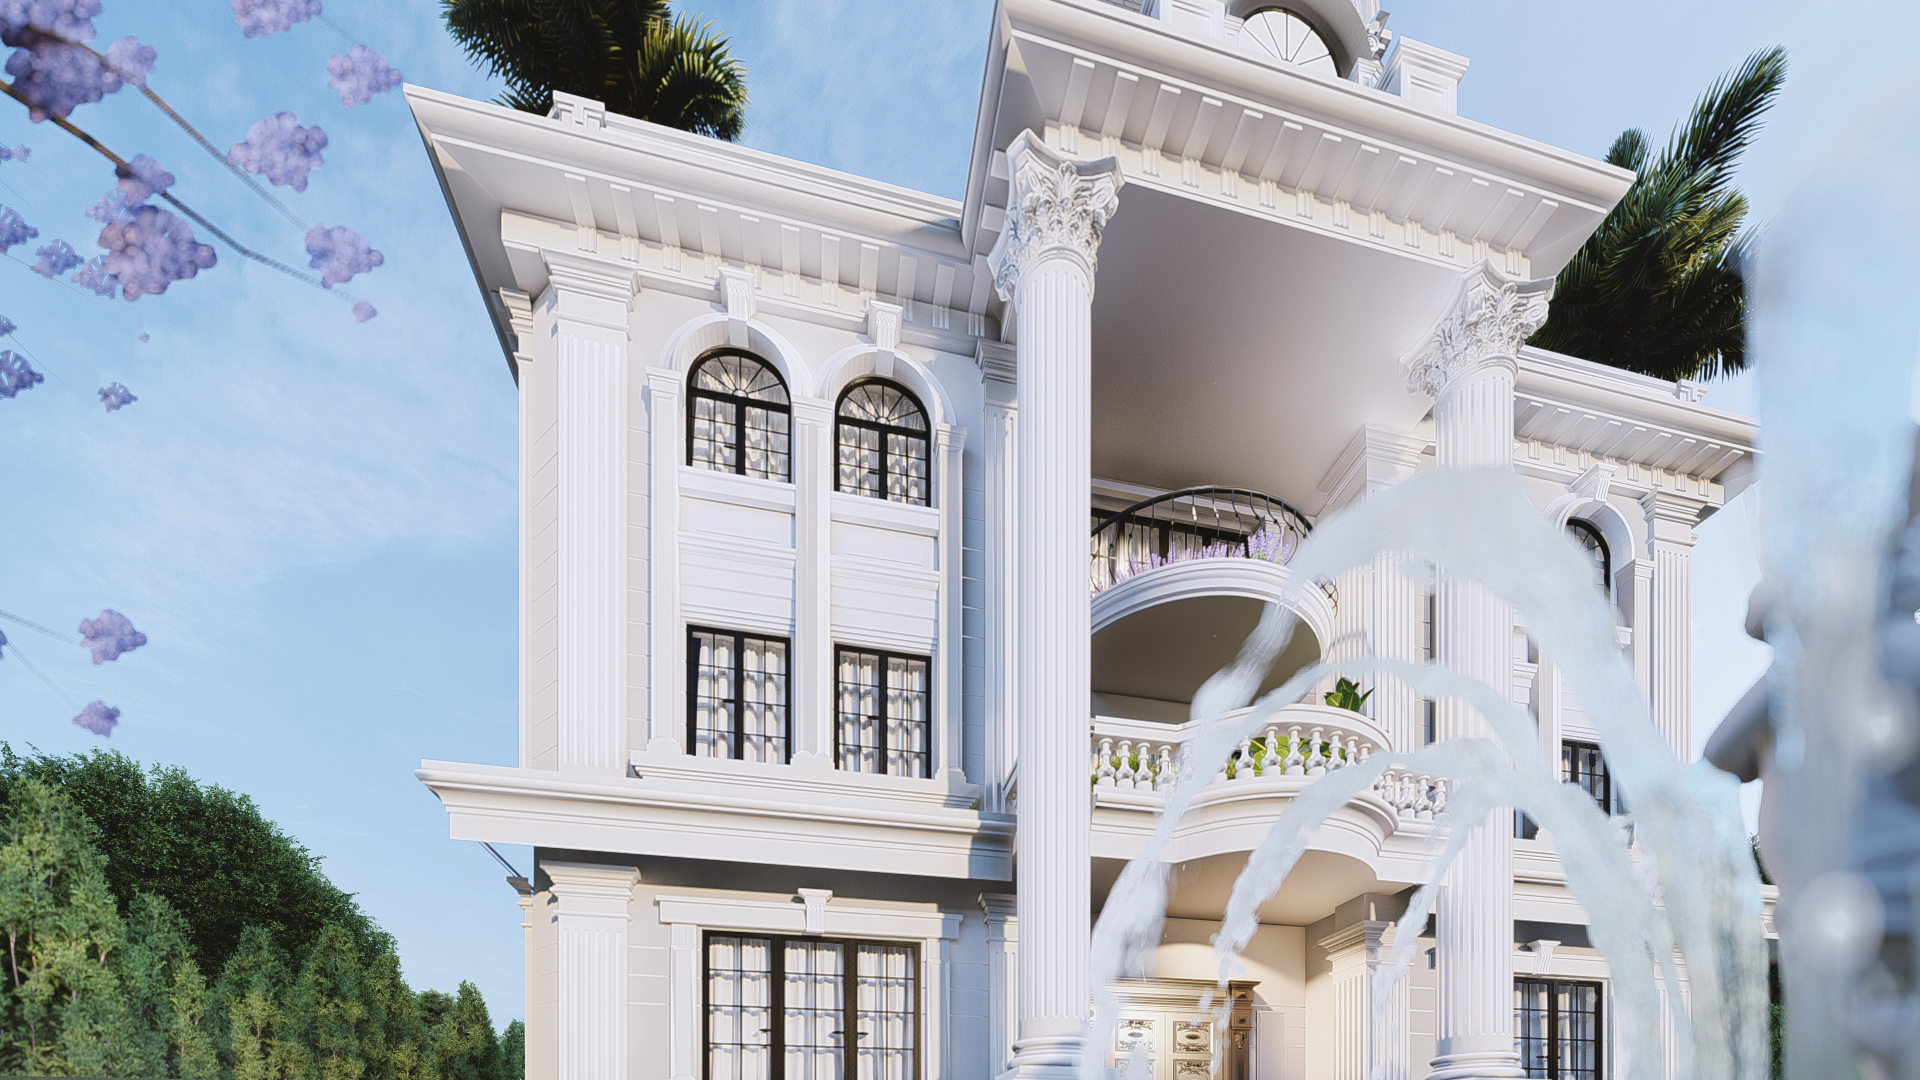 Thiết kế Biệt Thự tại Lâm Đồng BIỆT THỰ TÂN CỔ ĐIỂN 1605775425 4